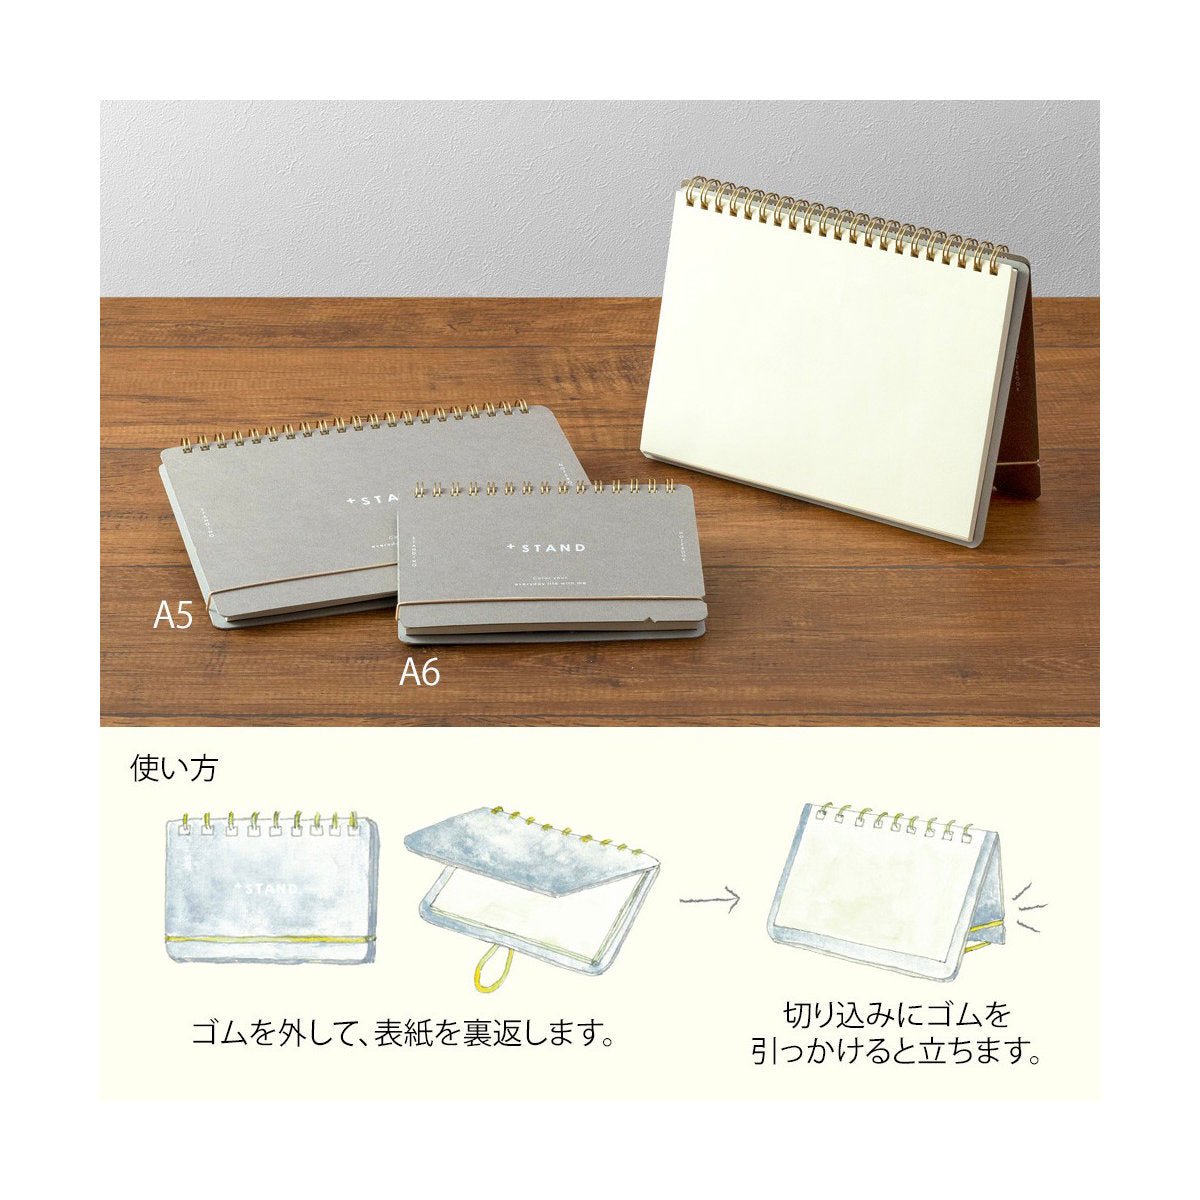 Midori Stand - A6 Notebook - Blank - Notegeist